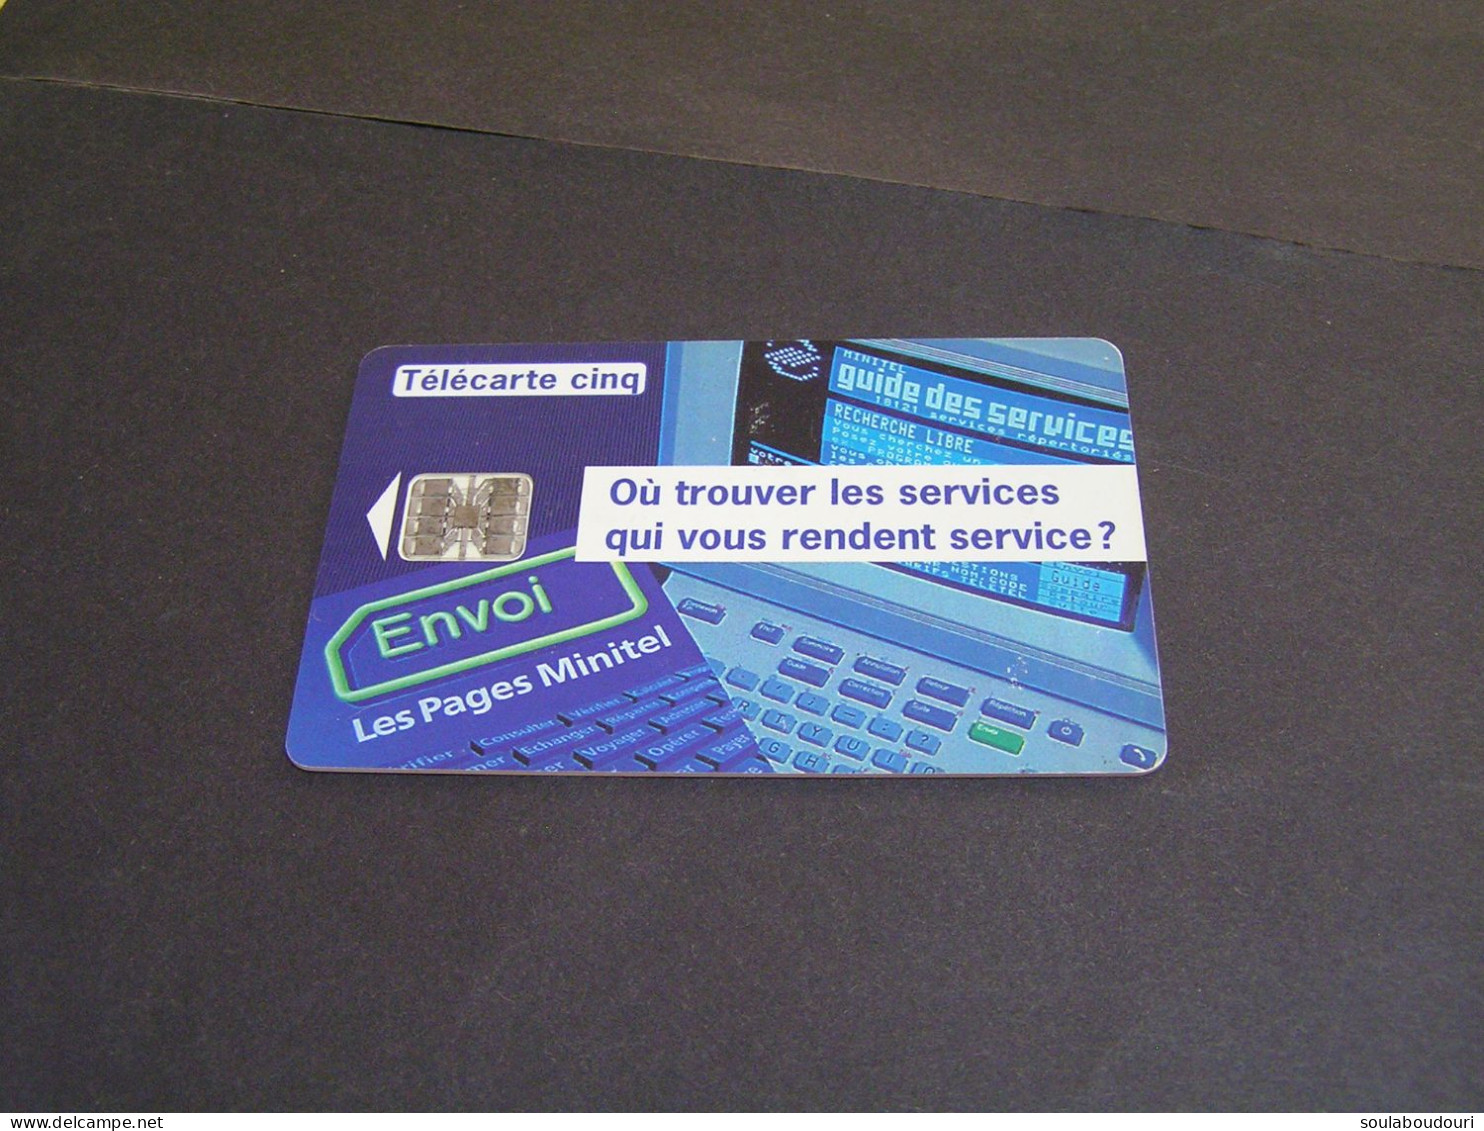 FRANCE Phonecards Private Tirage 65.000 Ex. 05/94.. - 5 Einheiten